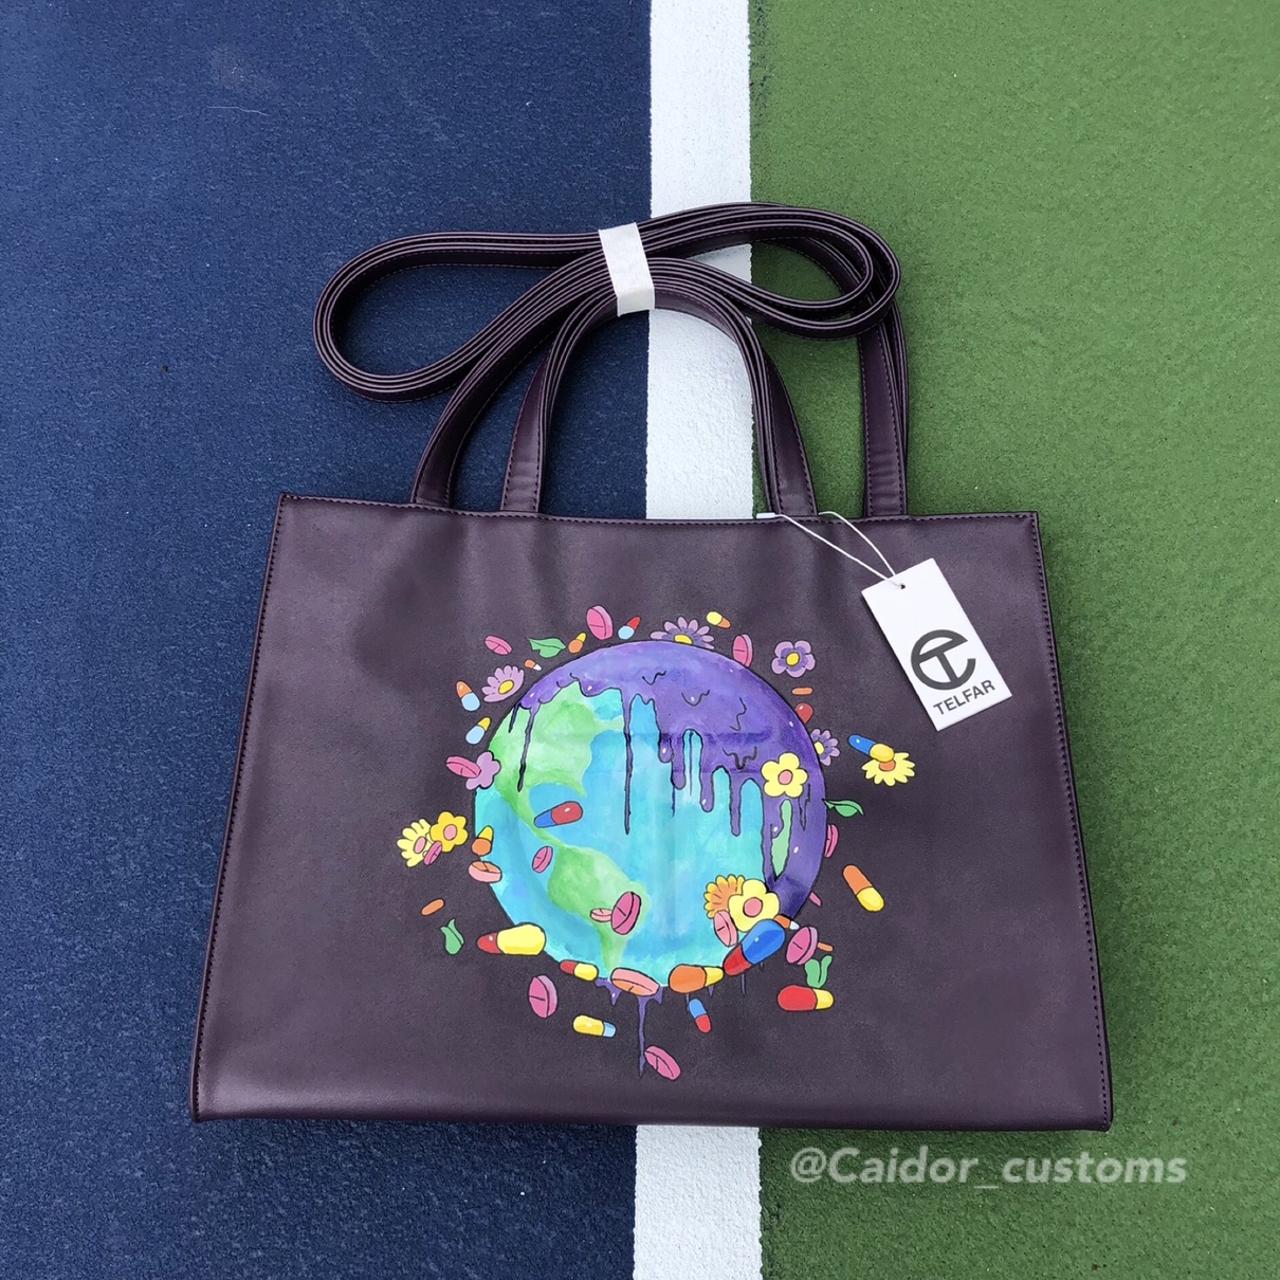 13 CUSTOMS ideas  handpainted bags, painted bags, bags